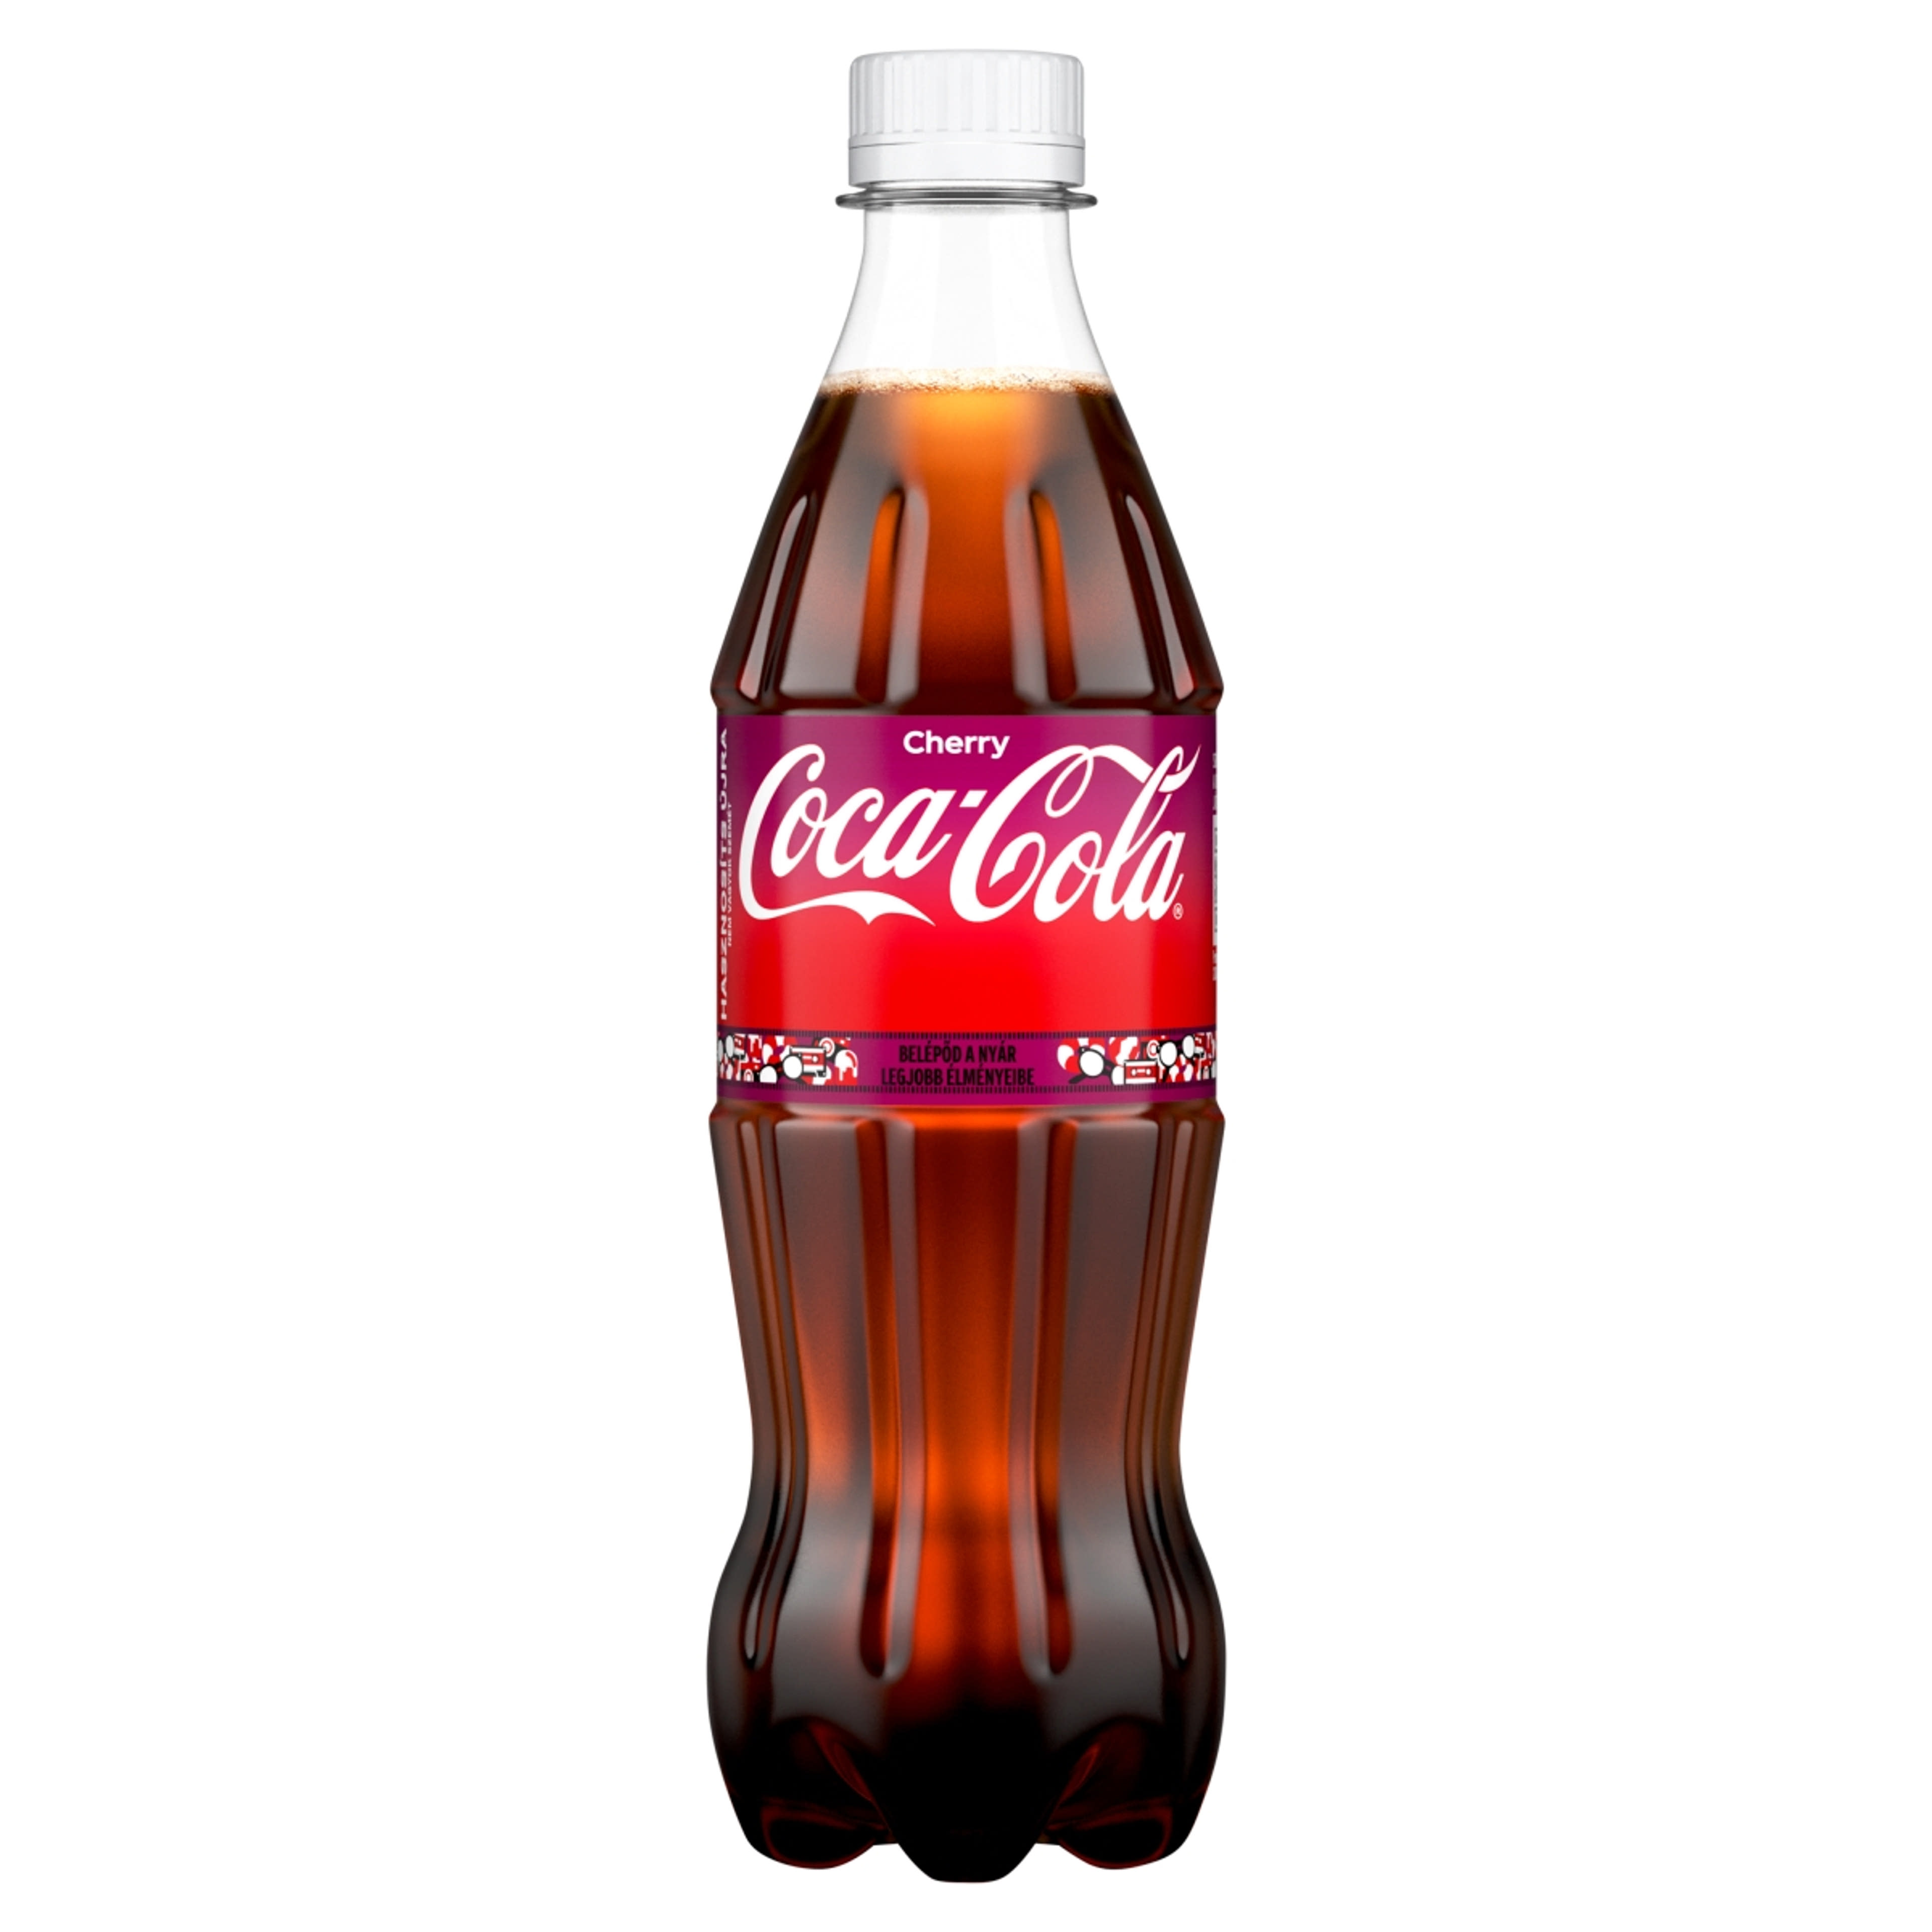 Coca Cola cherry coke - 500 ml